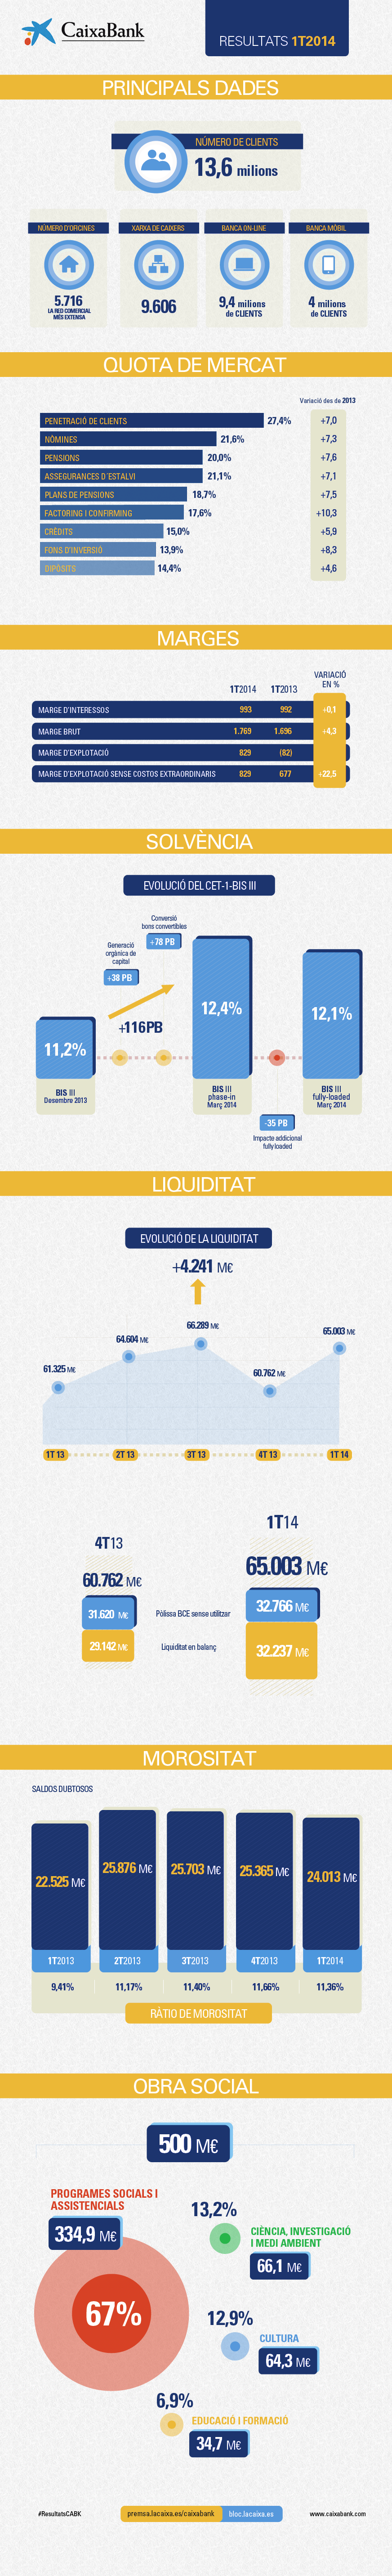 Infografia de Resultats CaixaBank 1T2014